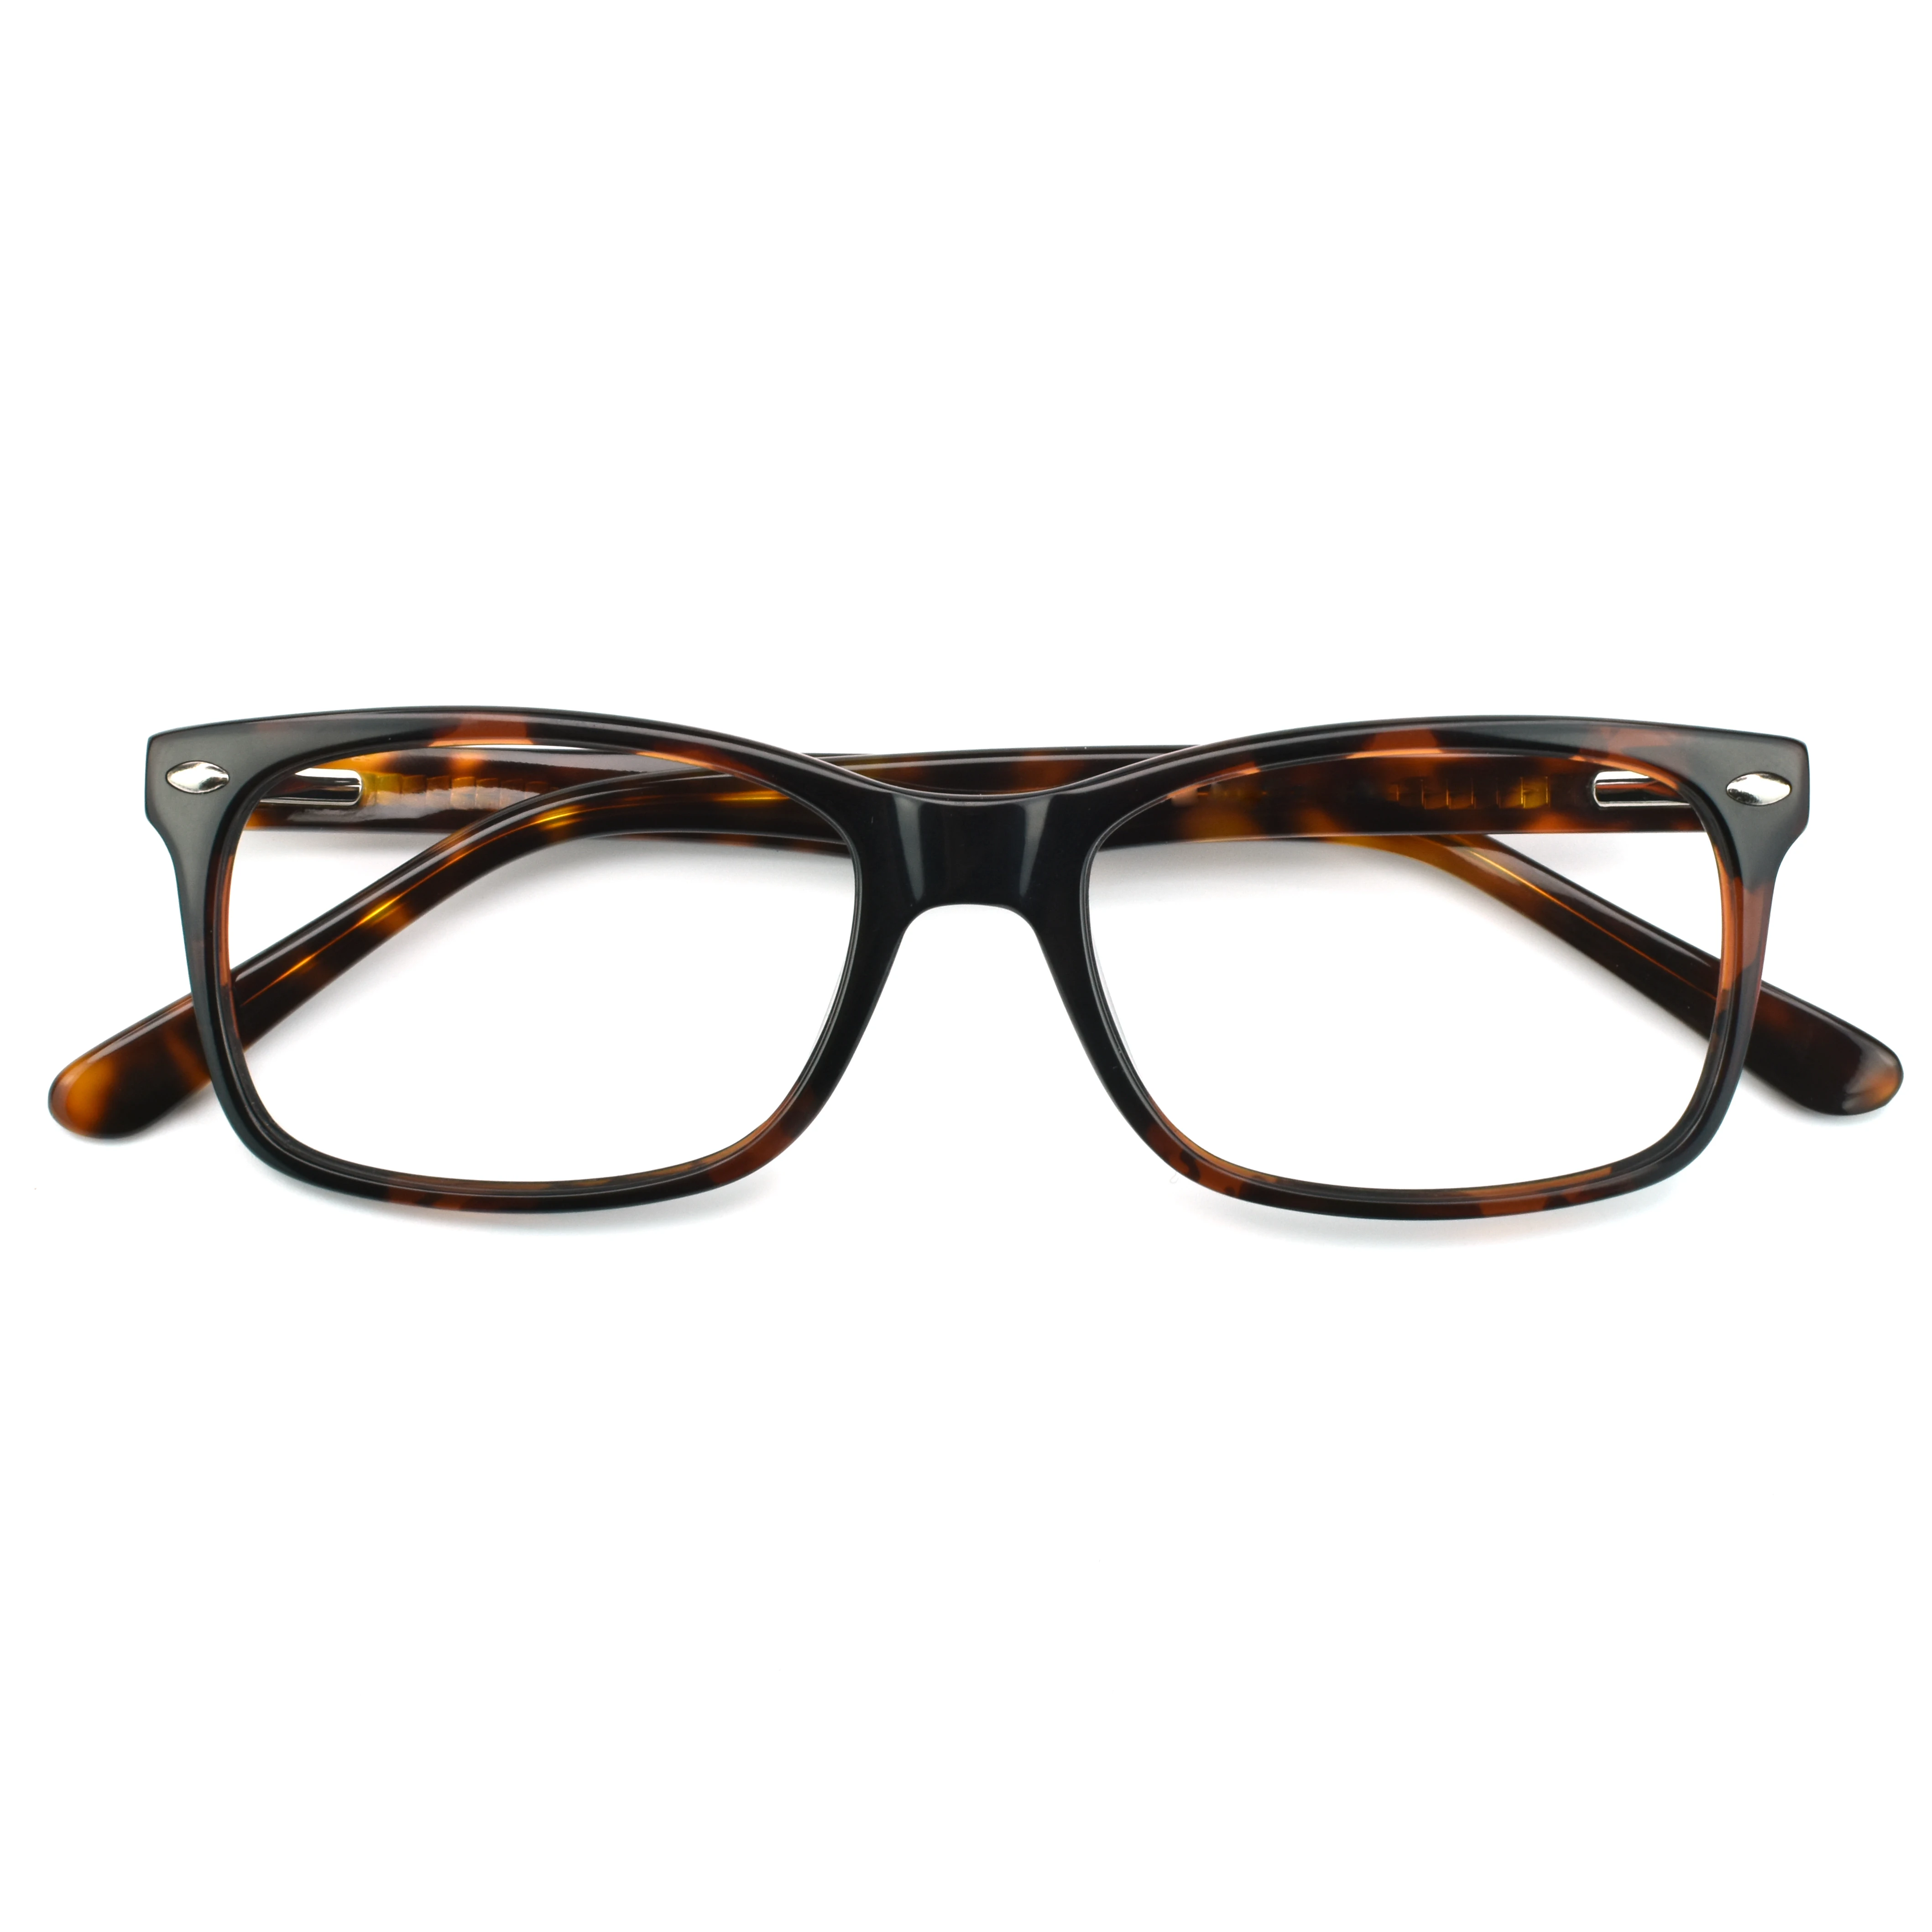 

Best Selling Fashion Design Vintage Acetate Eyeglasses square men Optical Frames 2021, 4 colors